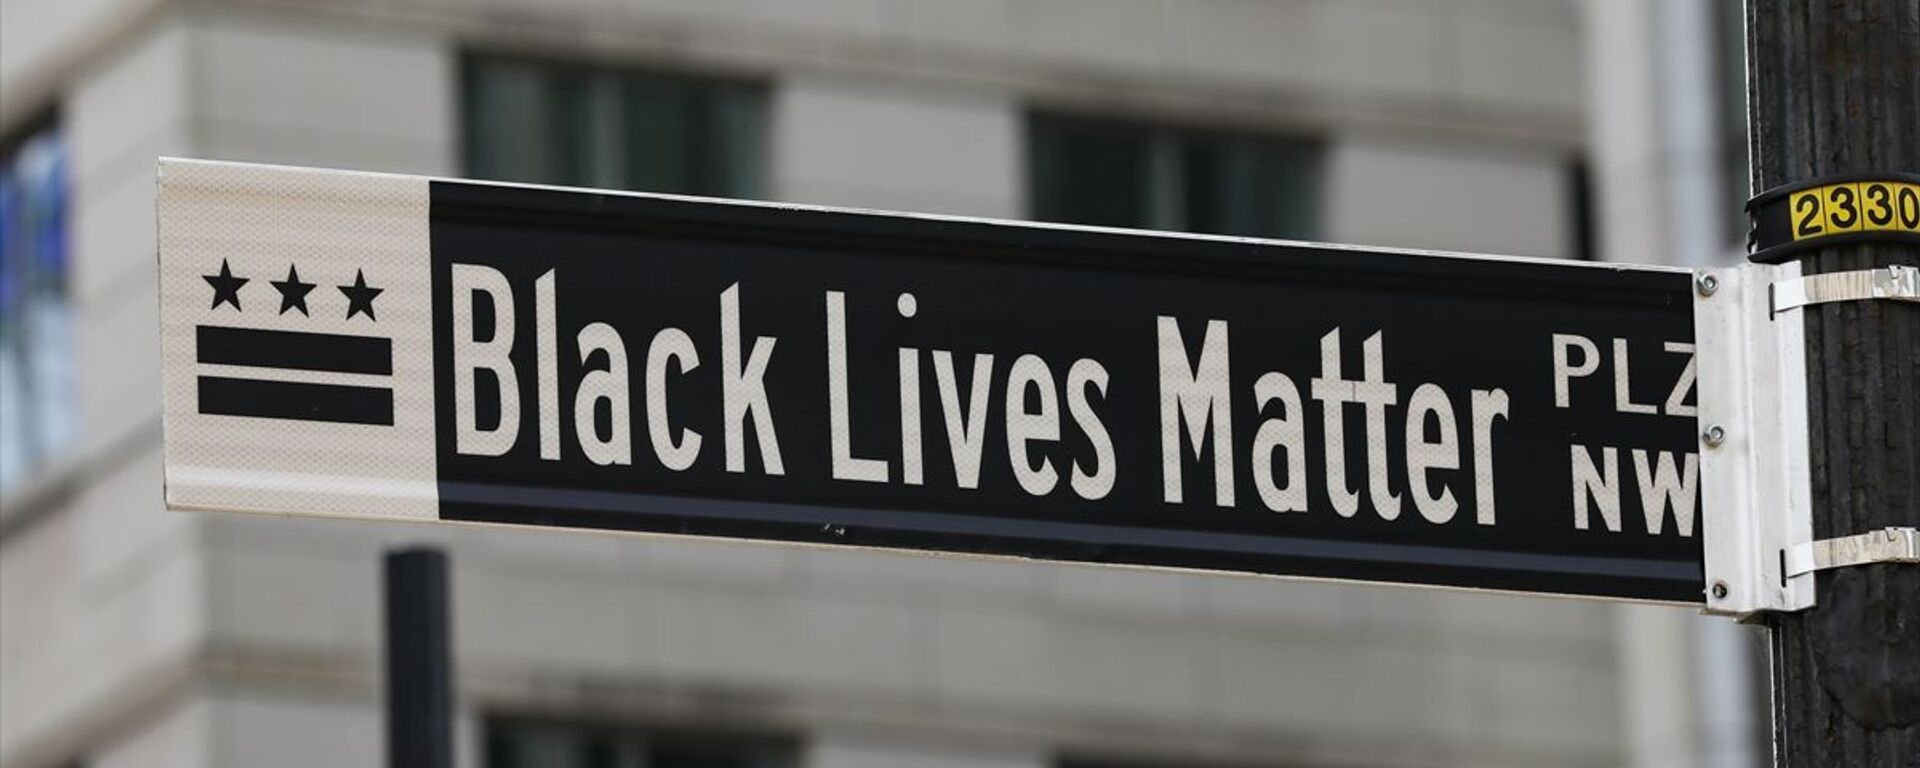 Beyaz Saray yakınlarındaki caddenin adı 'Black Lives Matter' olarak değiştirildi - Sputnik Türkiye, 1920, 19.05.2021